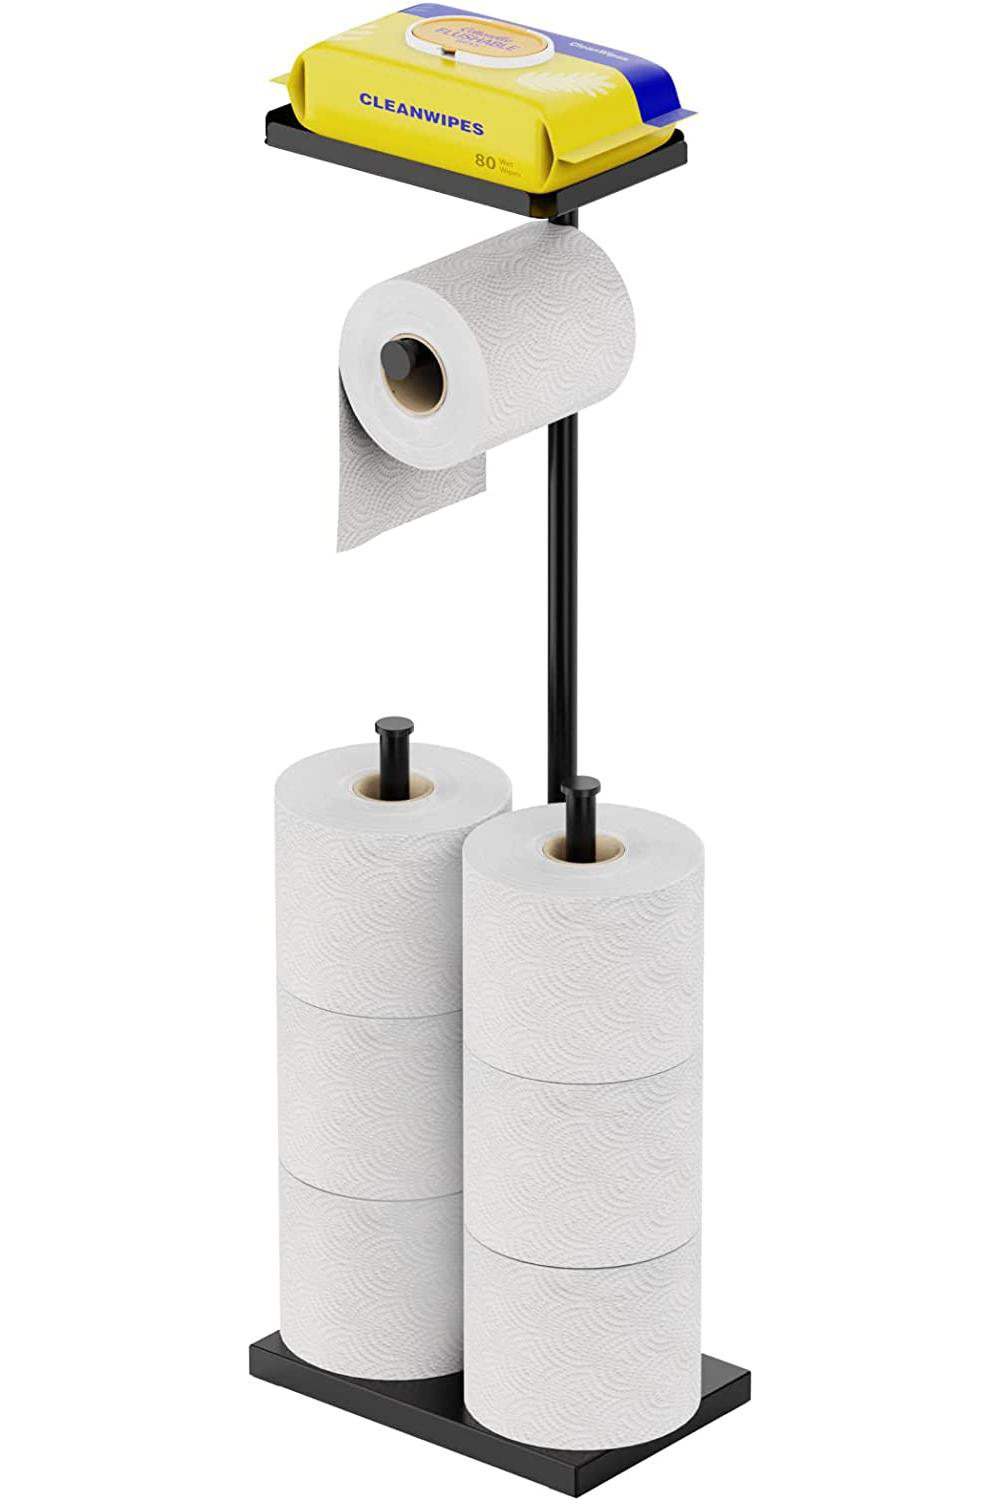 Free-Standing Dispensing Toilet Paper Holder, Black